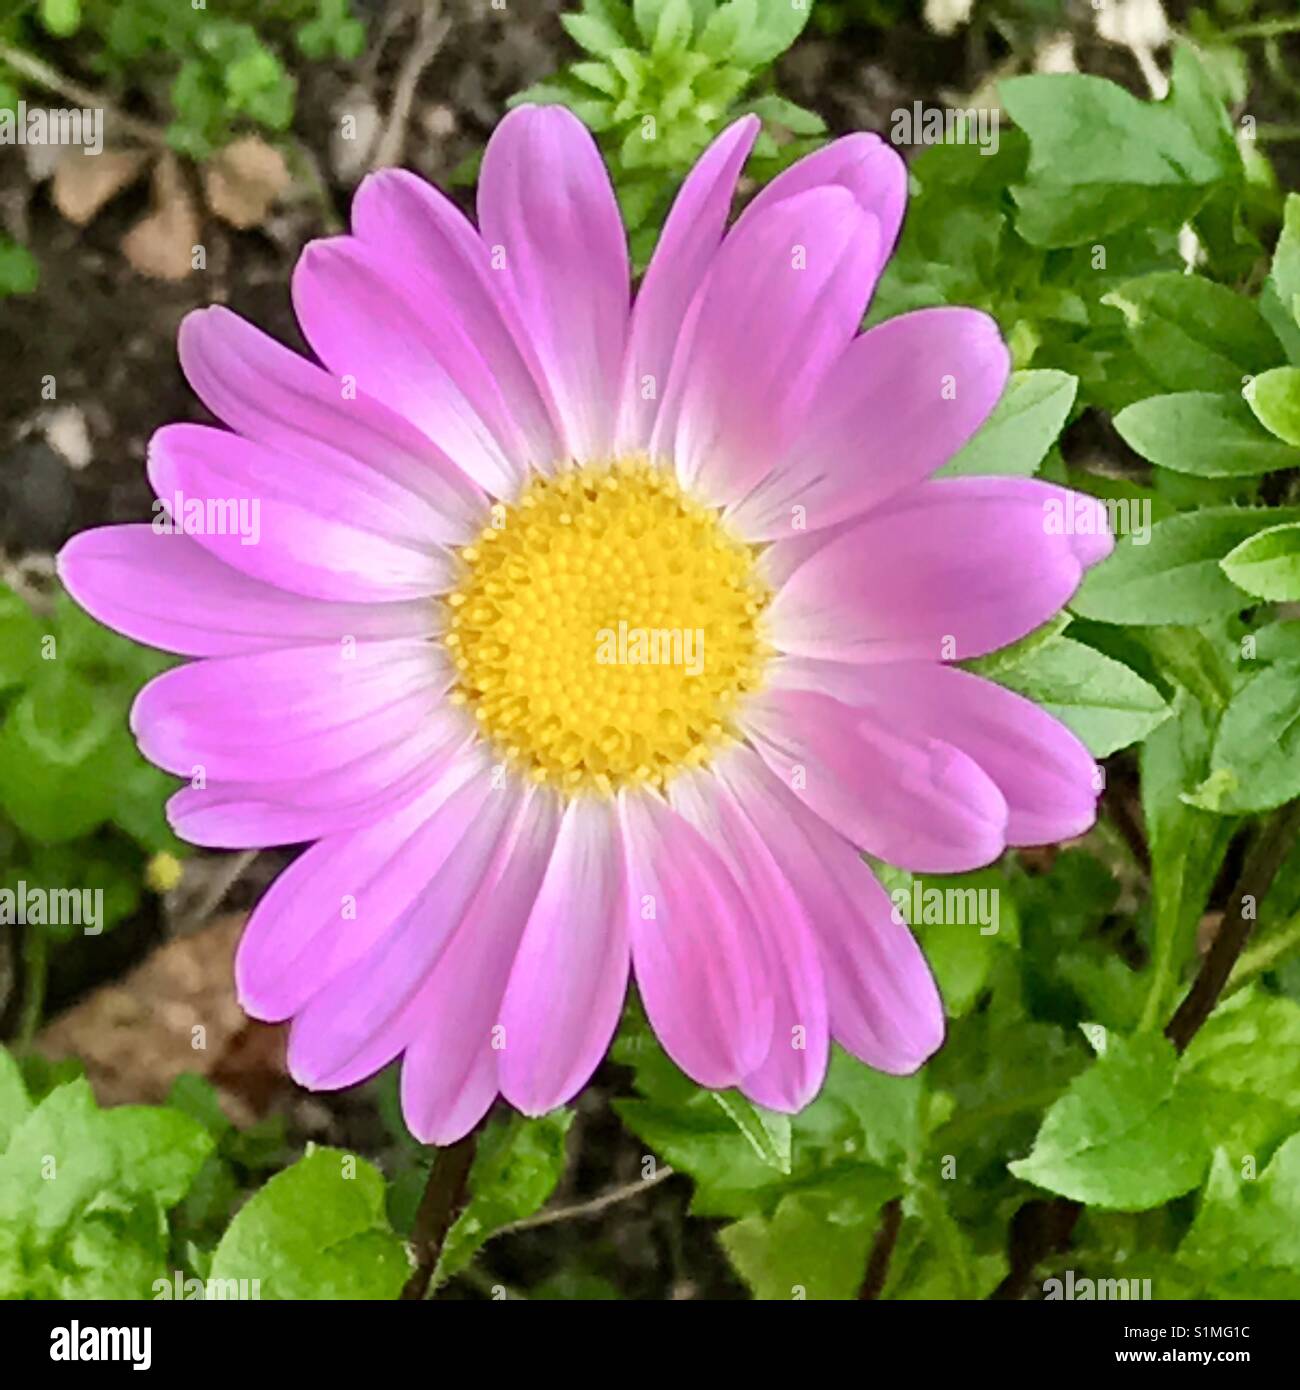 Pink daisy. Stock Photo